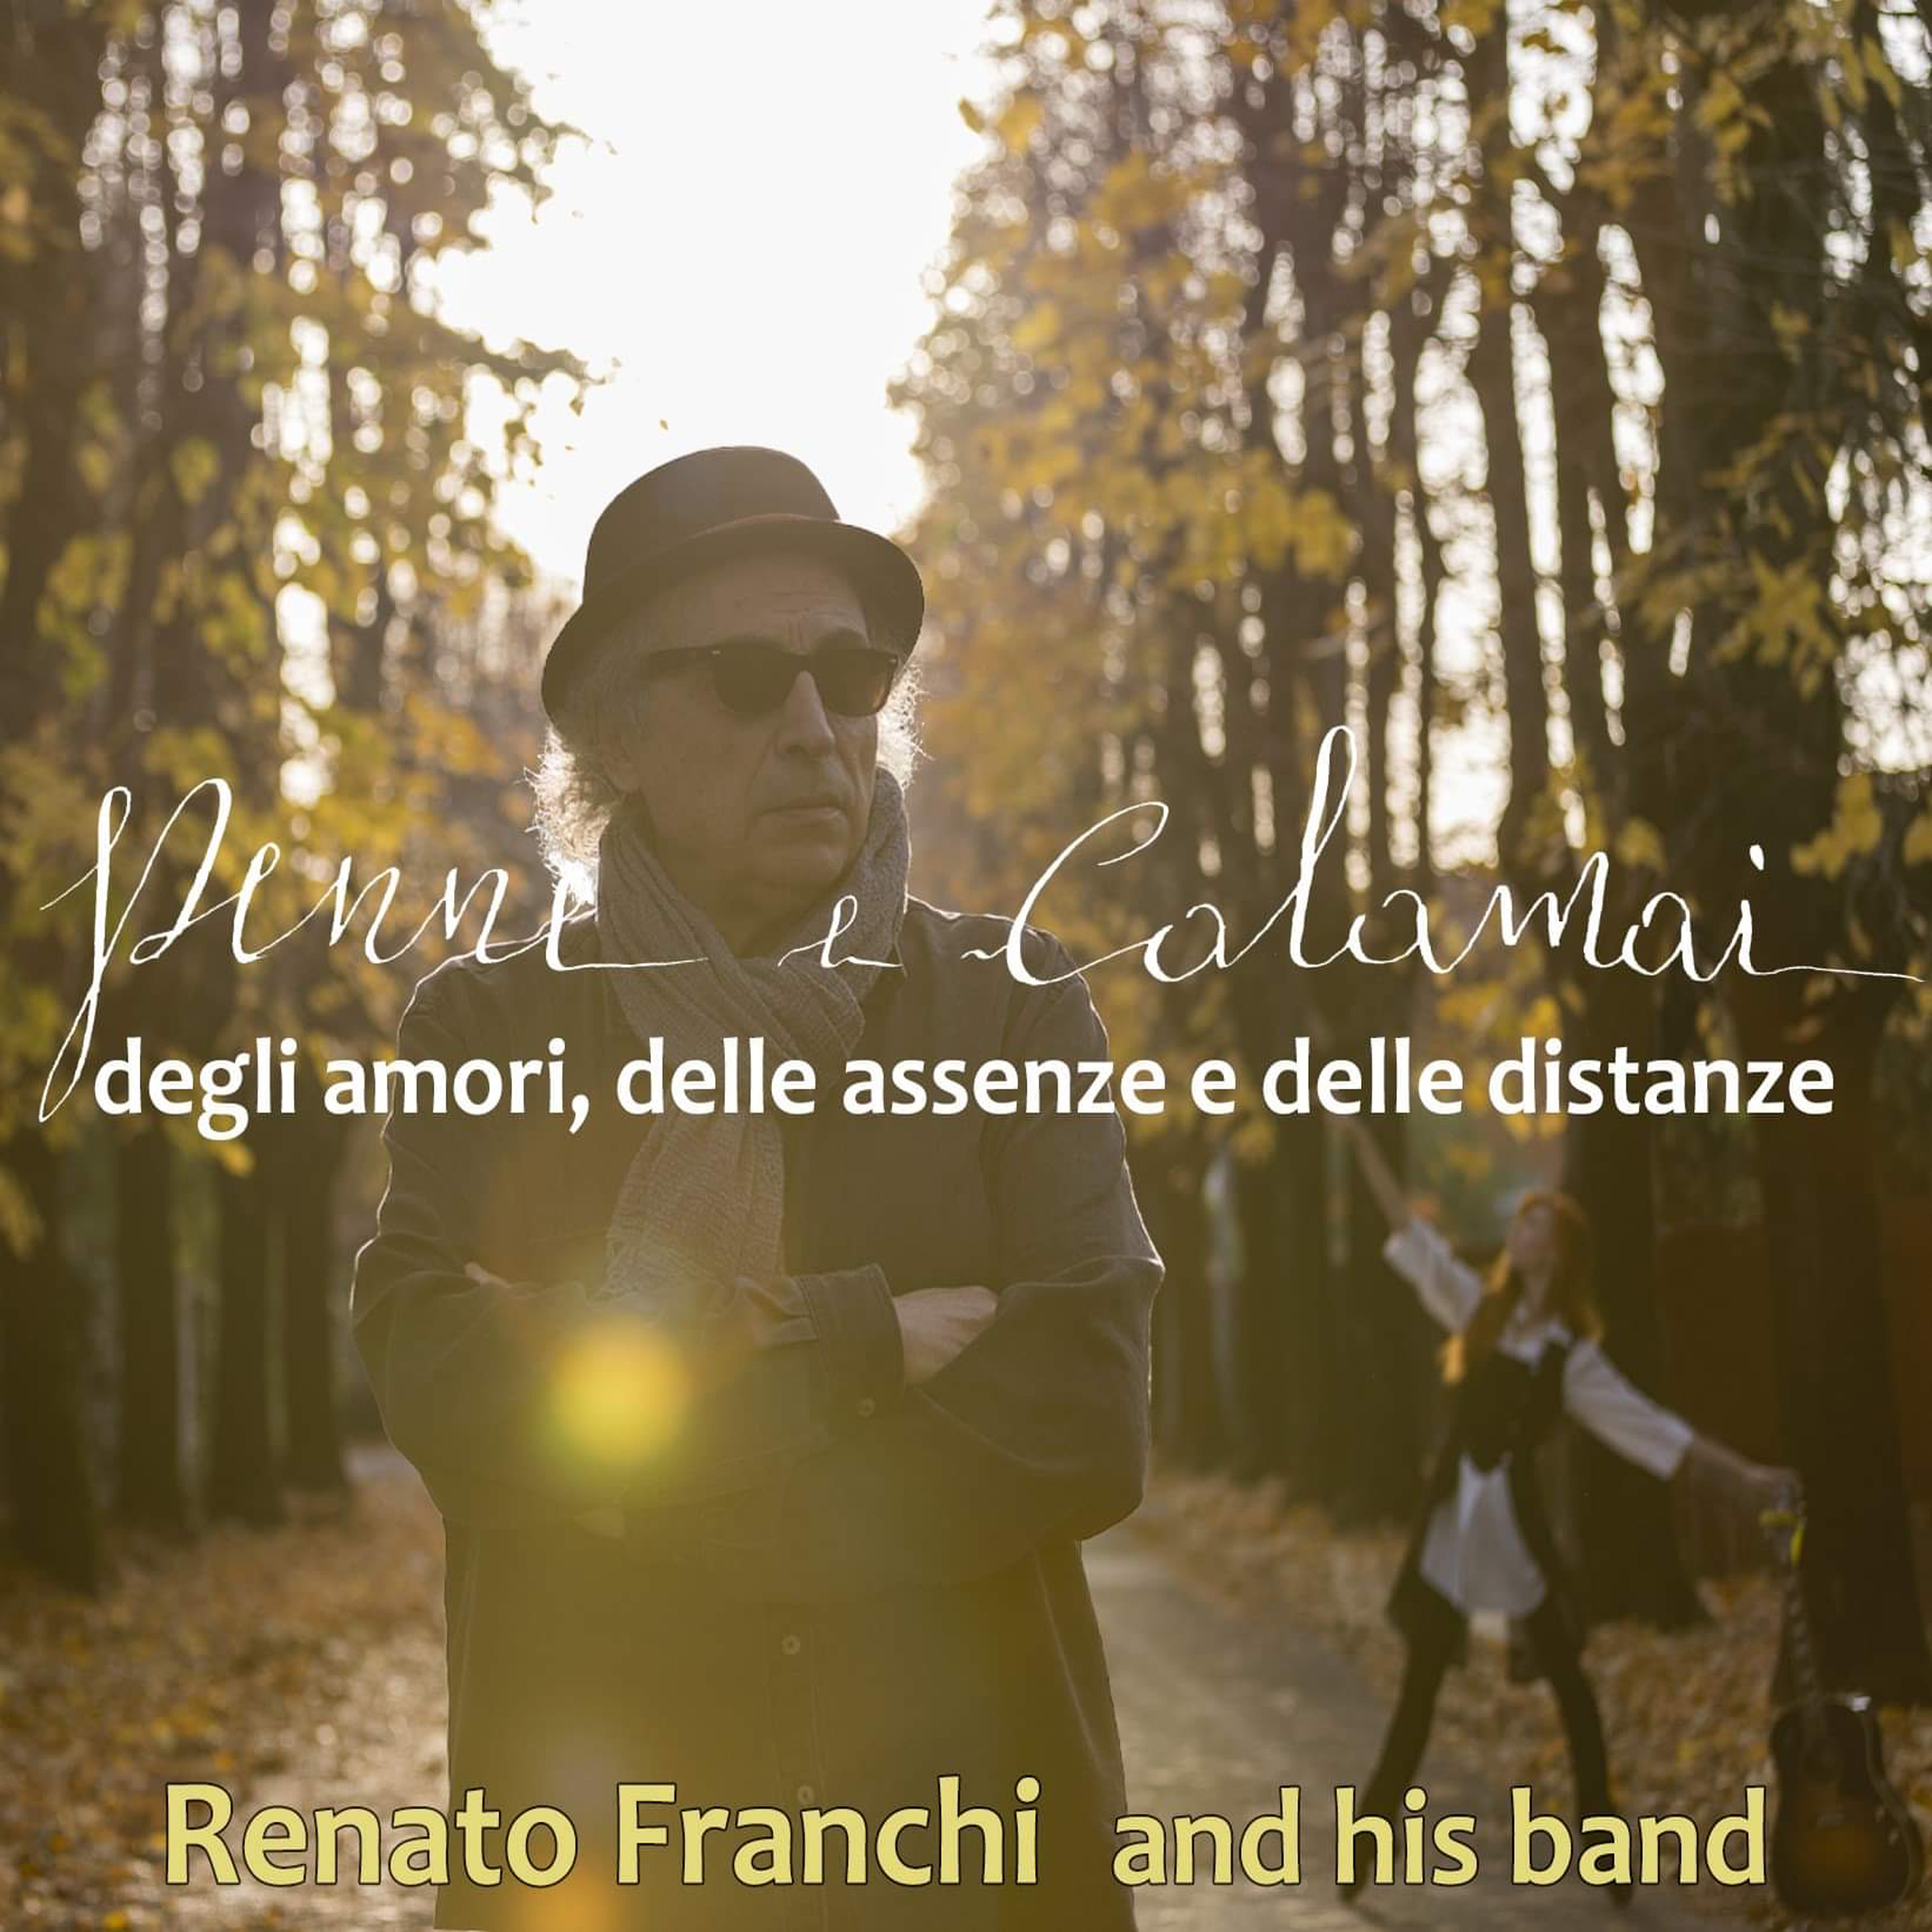 Renato Franchi – “Penne e Calamai”